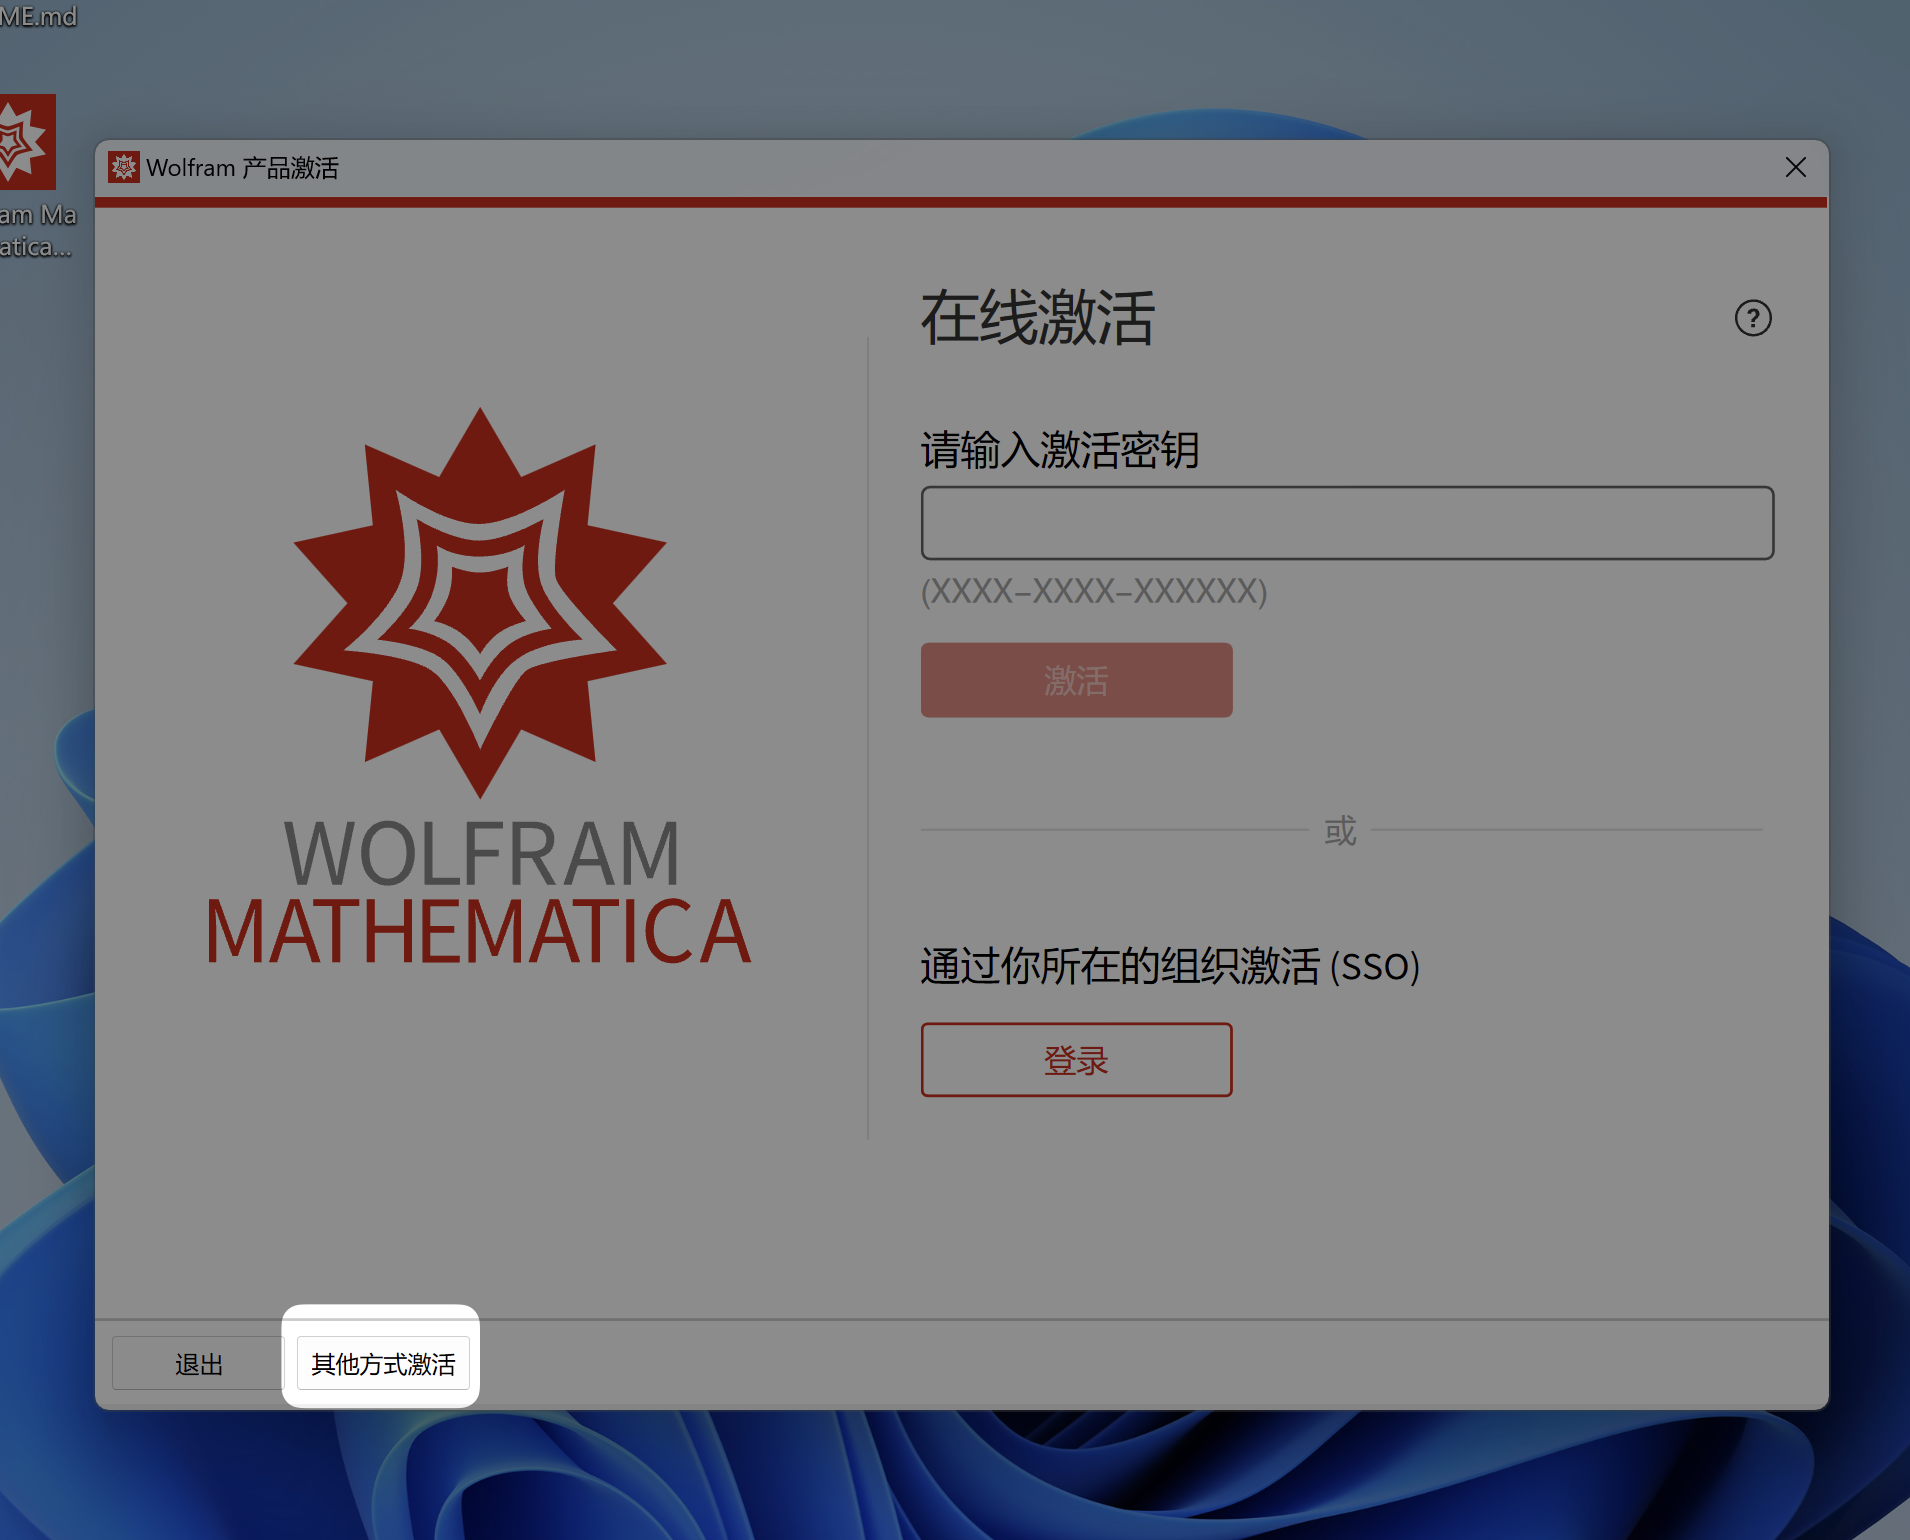 「互联网速记」也许是最优雅的 Wolfram Mathematica 破解方式 - 6